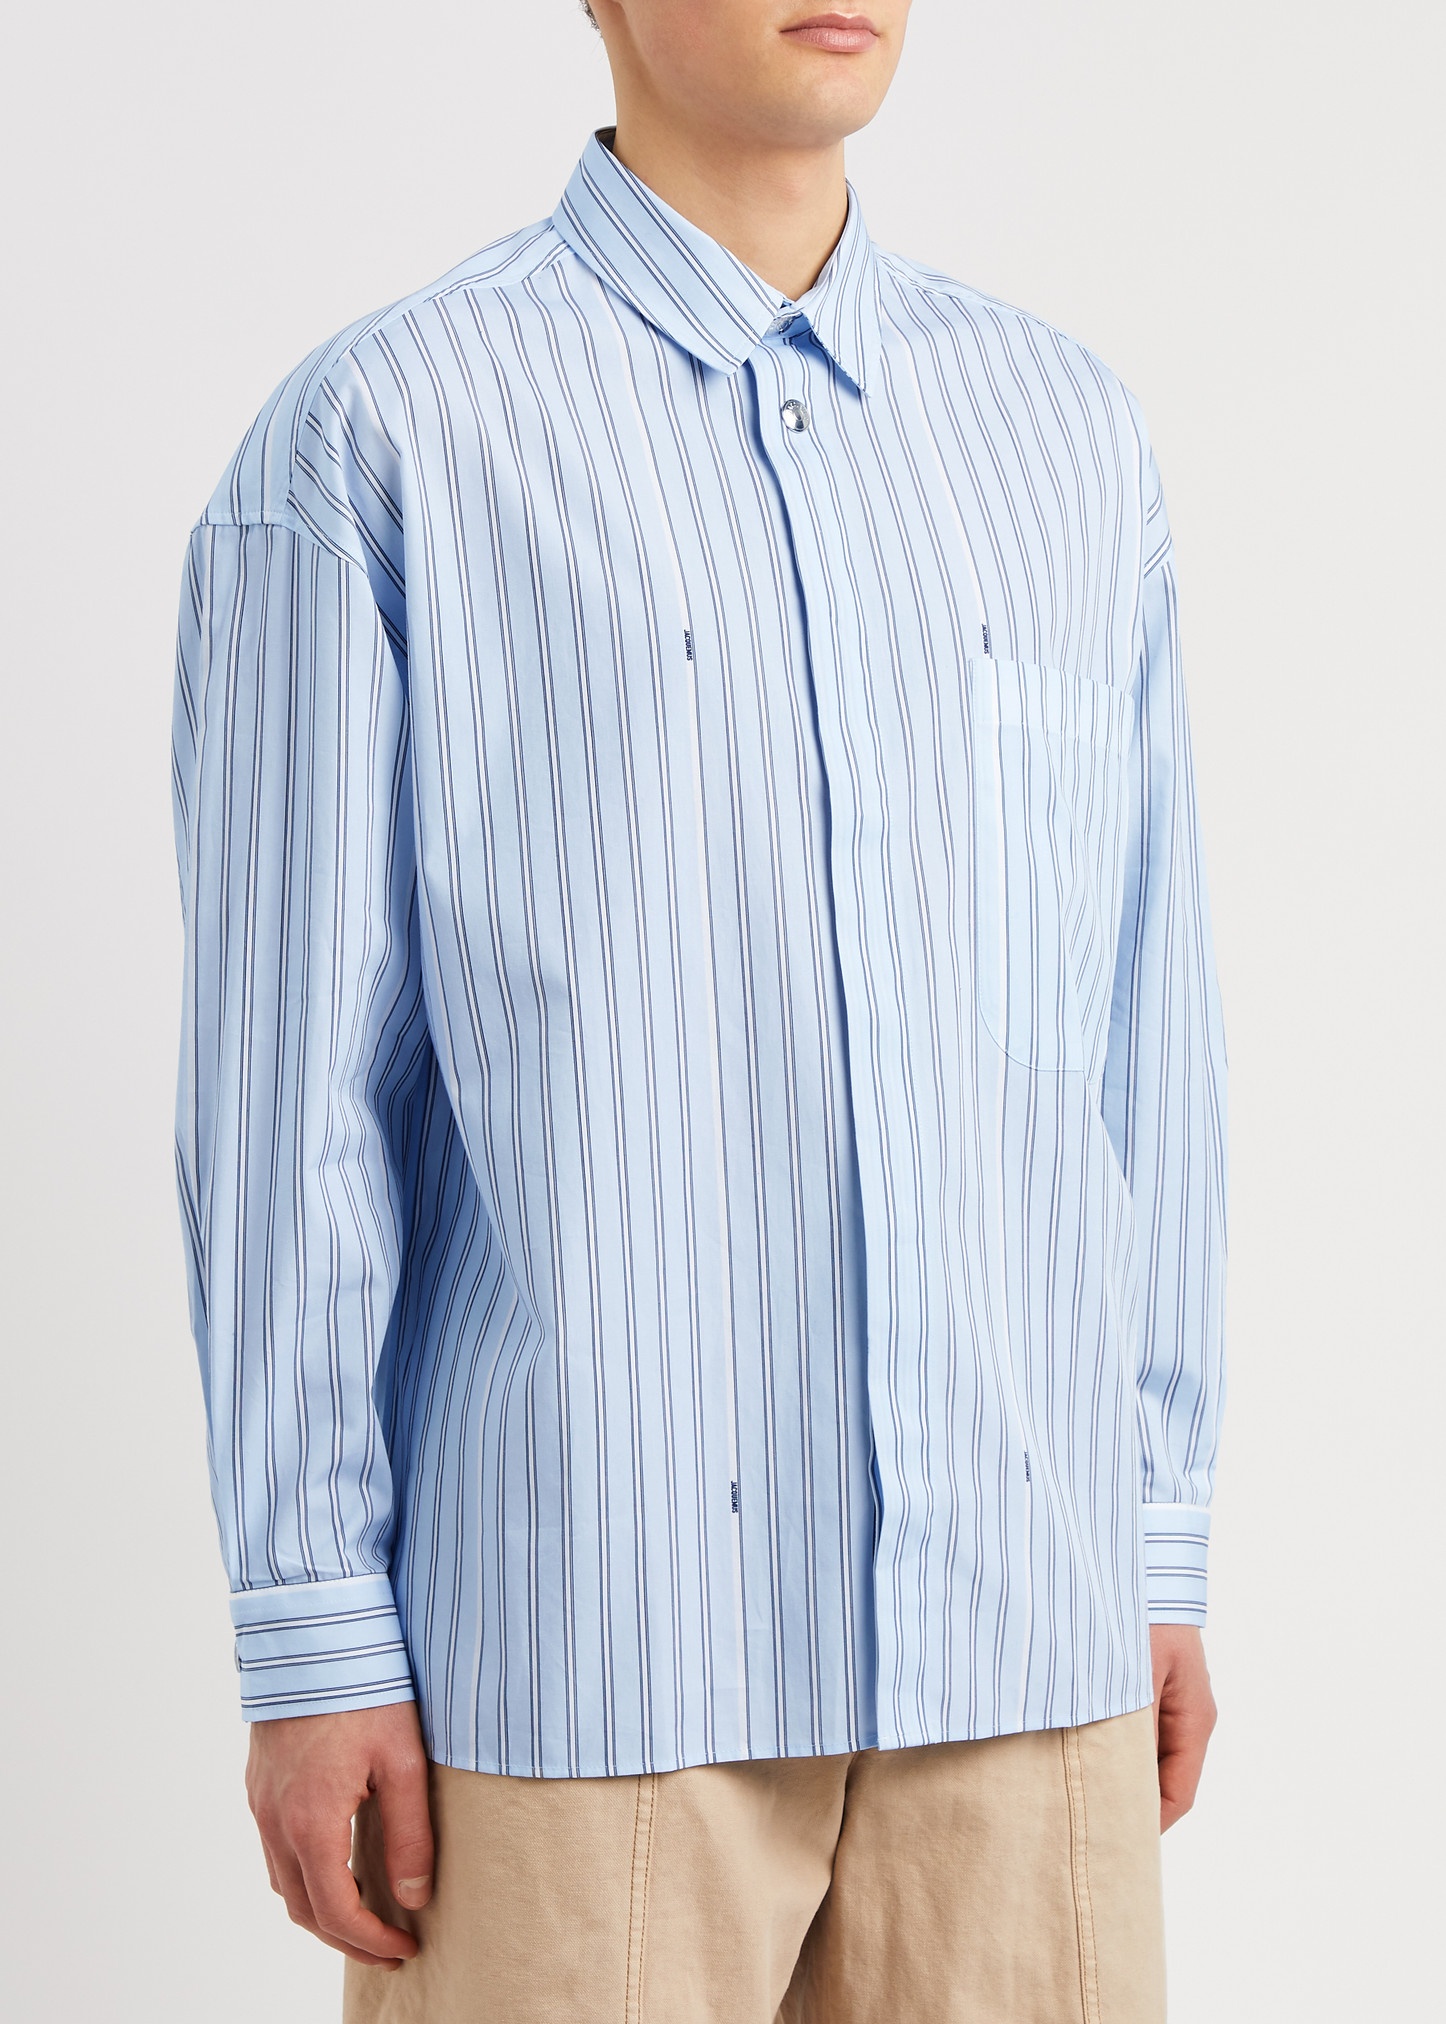 Le Chemise Manches Longue striped cotton shirt - 2